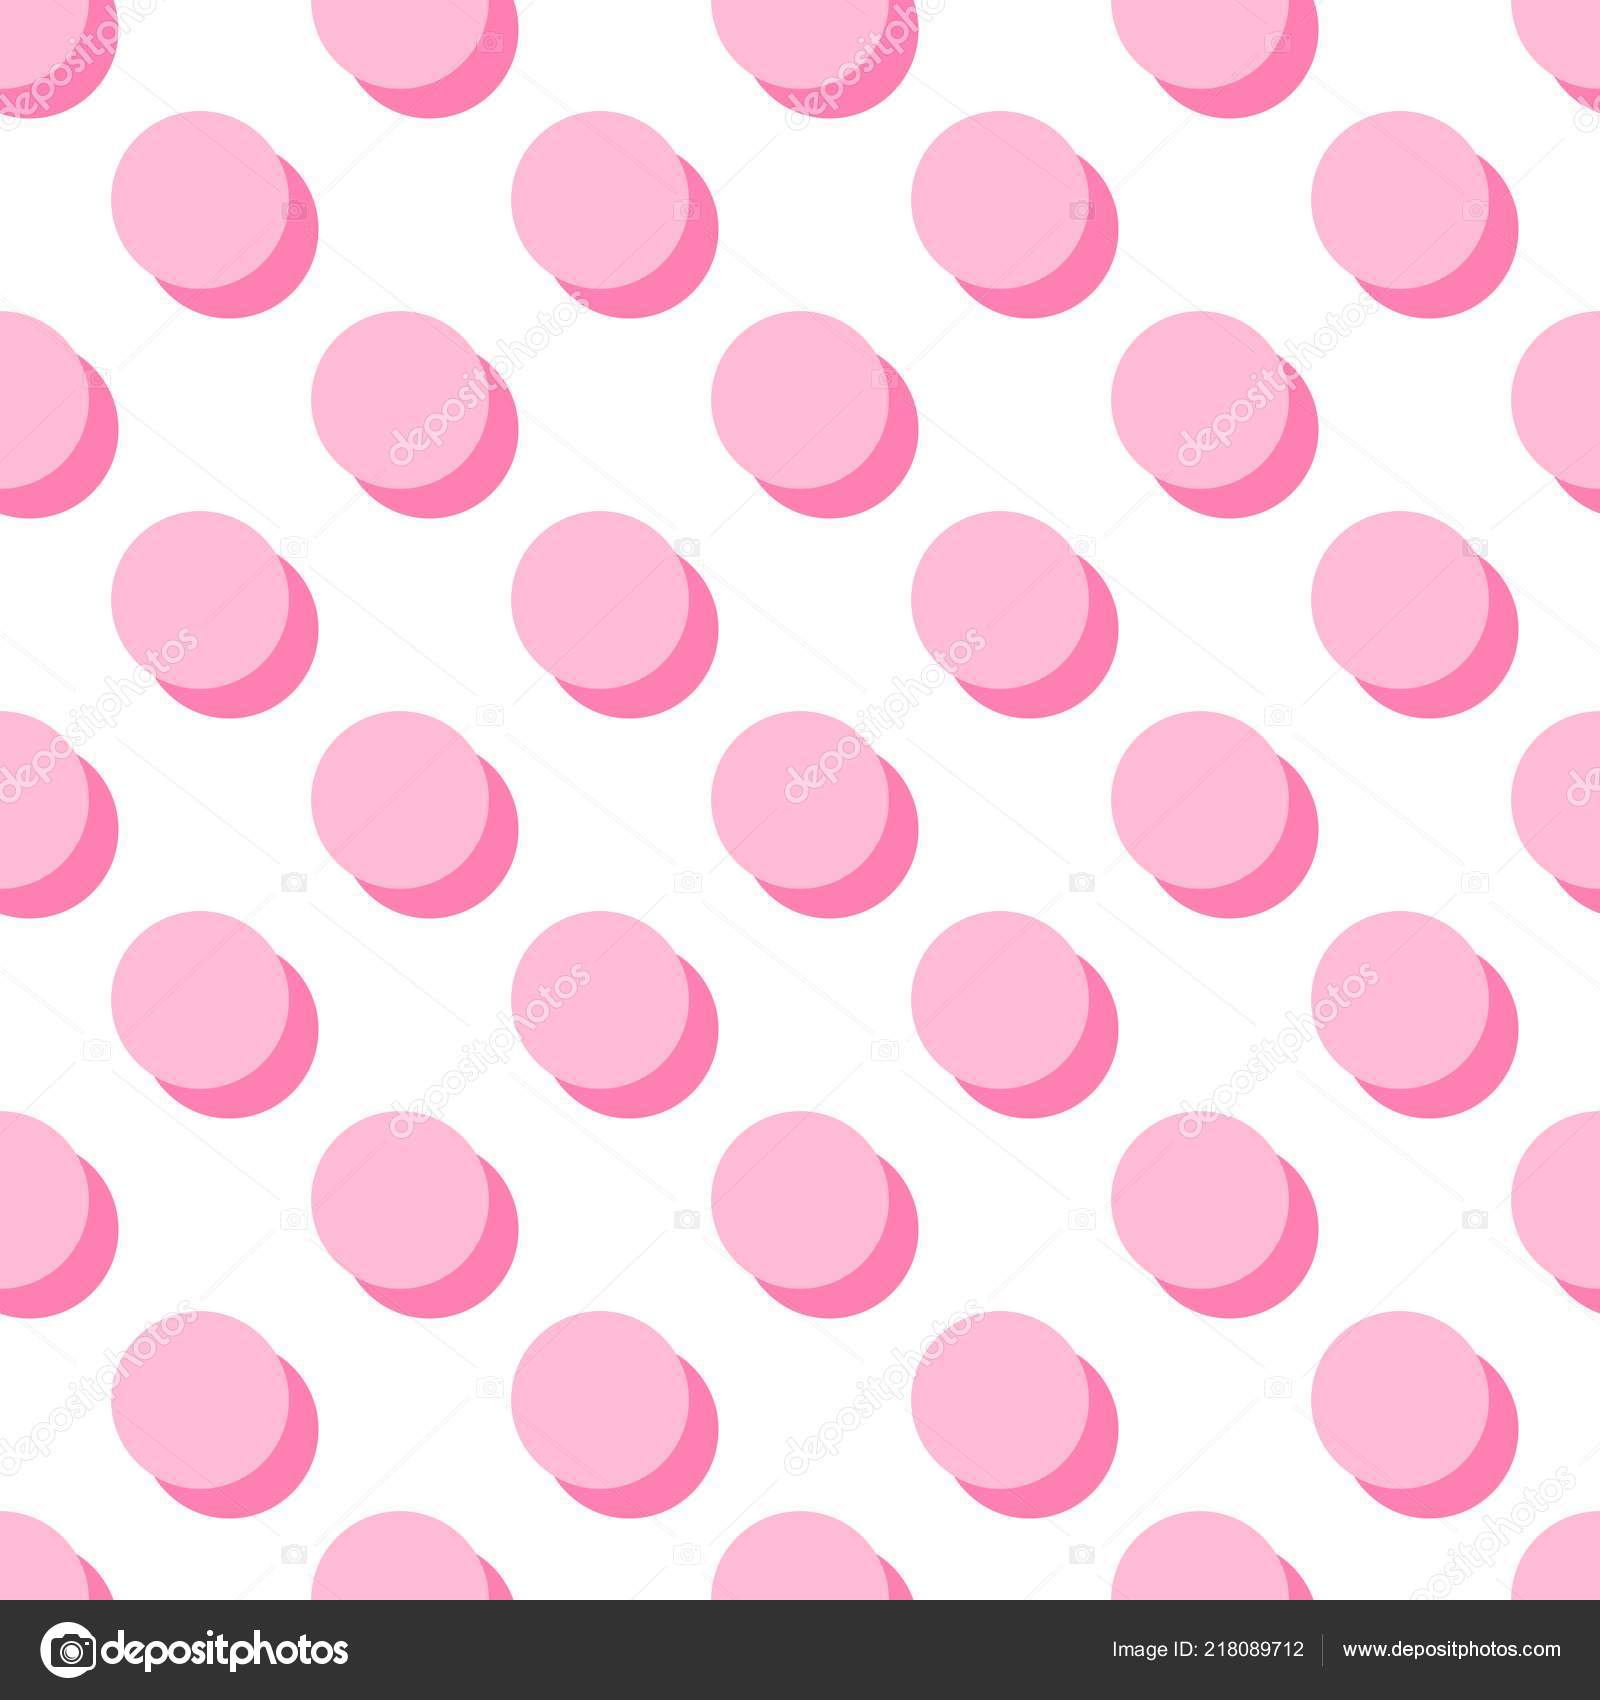 Images Pink Polka Dots Backgrounds Tile Vector Pattern